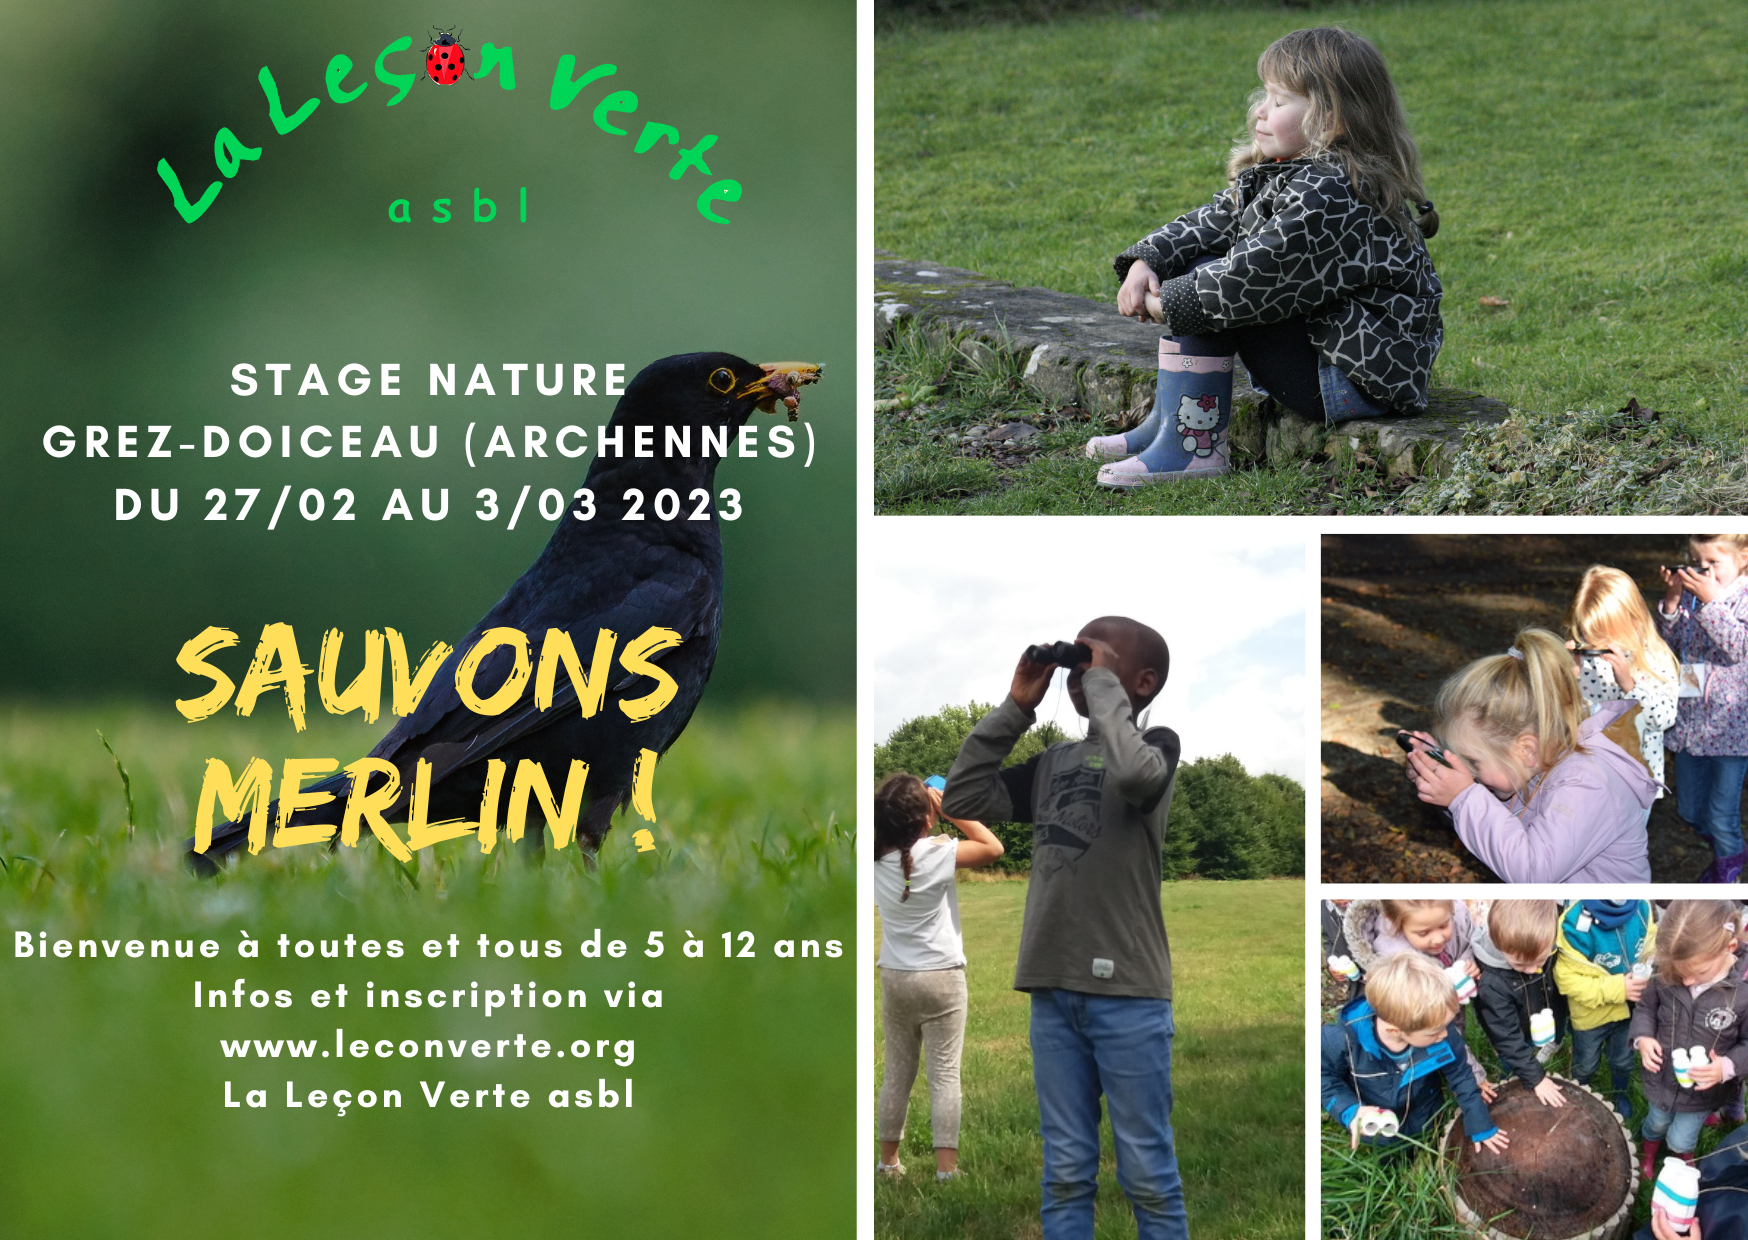 Flyer du stage Nature - La Leçon Verte - Carnaval 2023